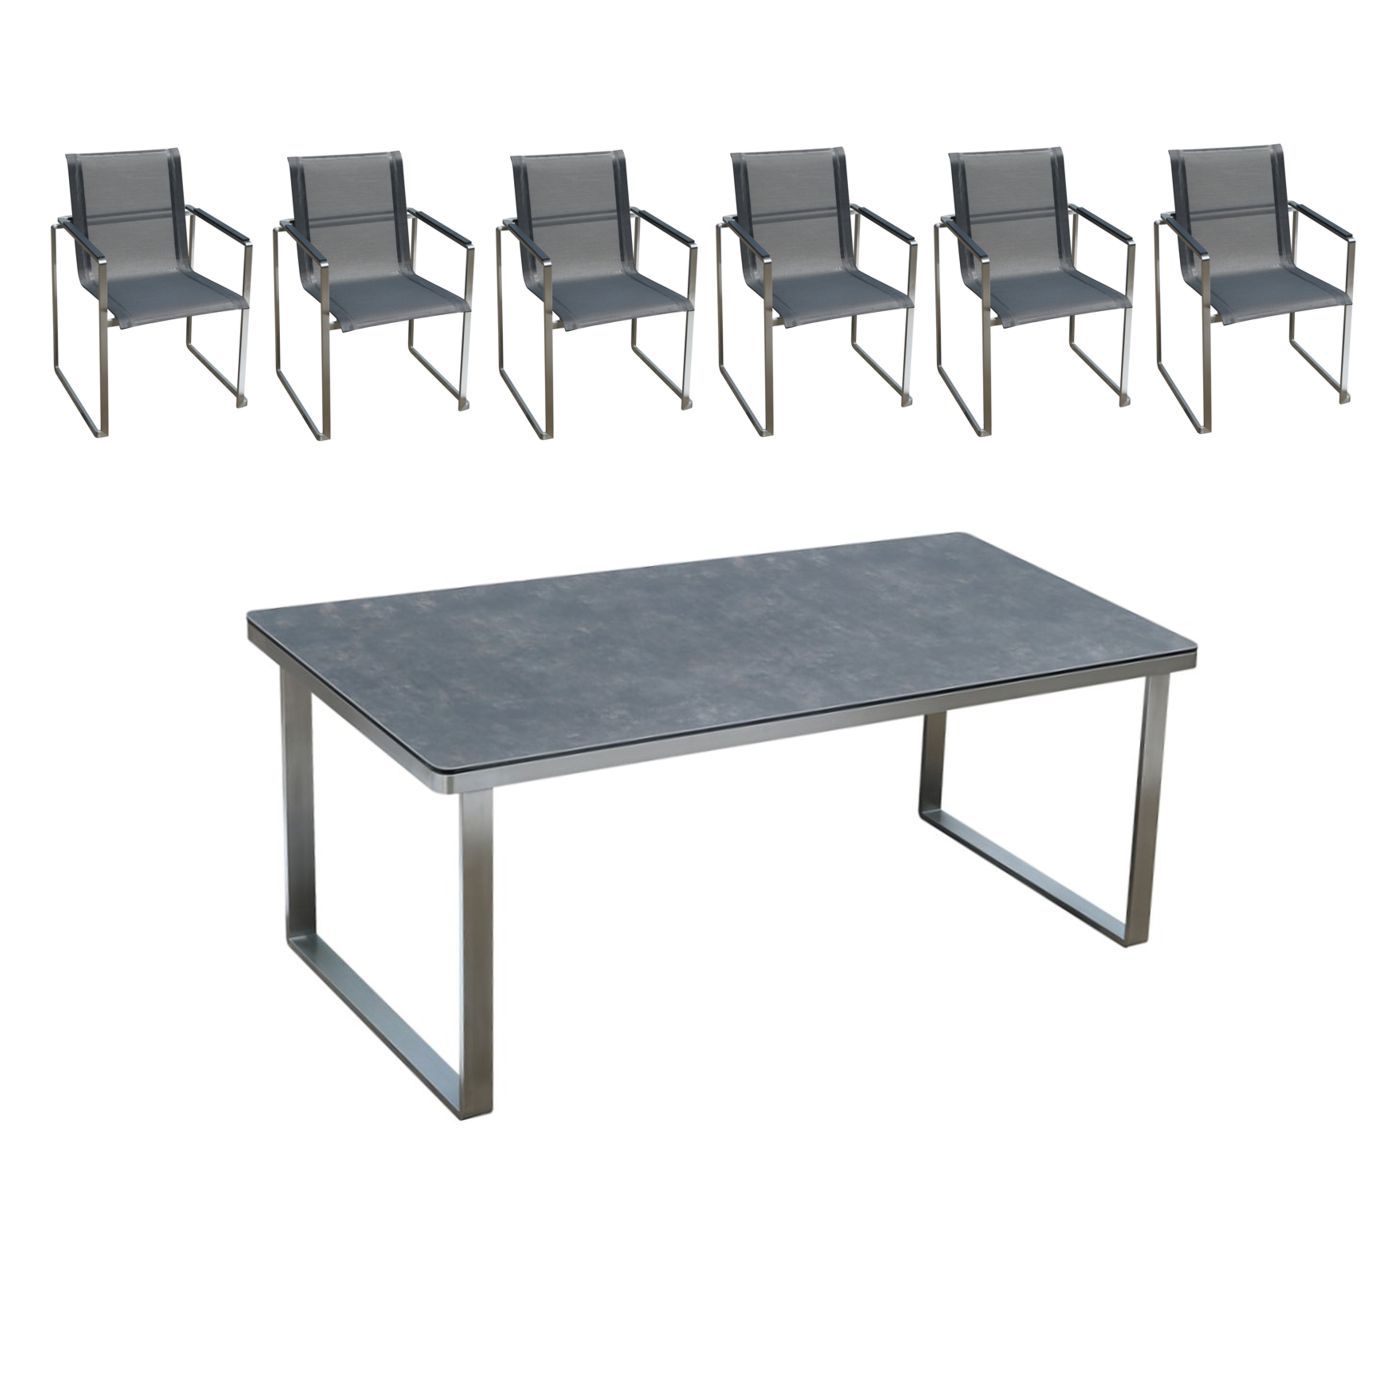 Gartenmöbel Set: 6 Stühle und 1 Tisch aus Edelstahl und Glaskeramik Tischplatte